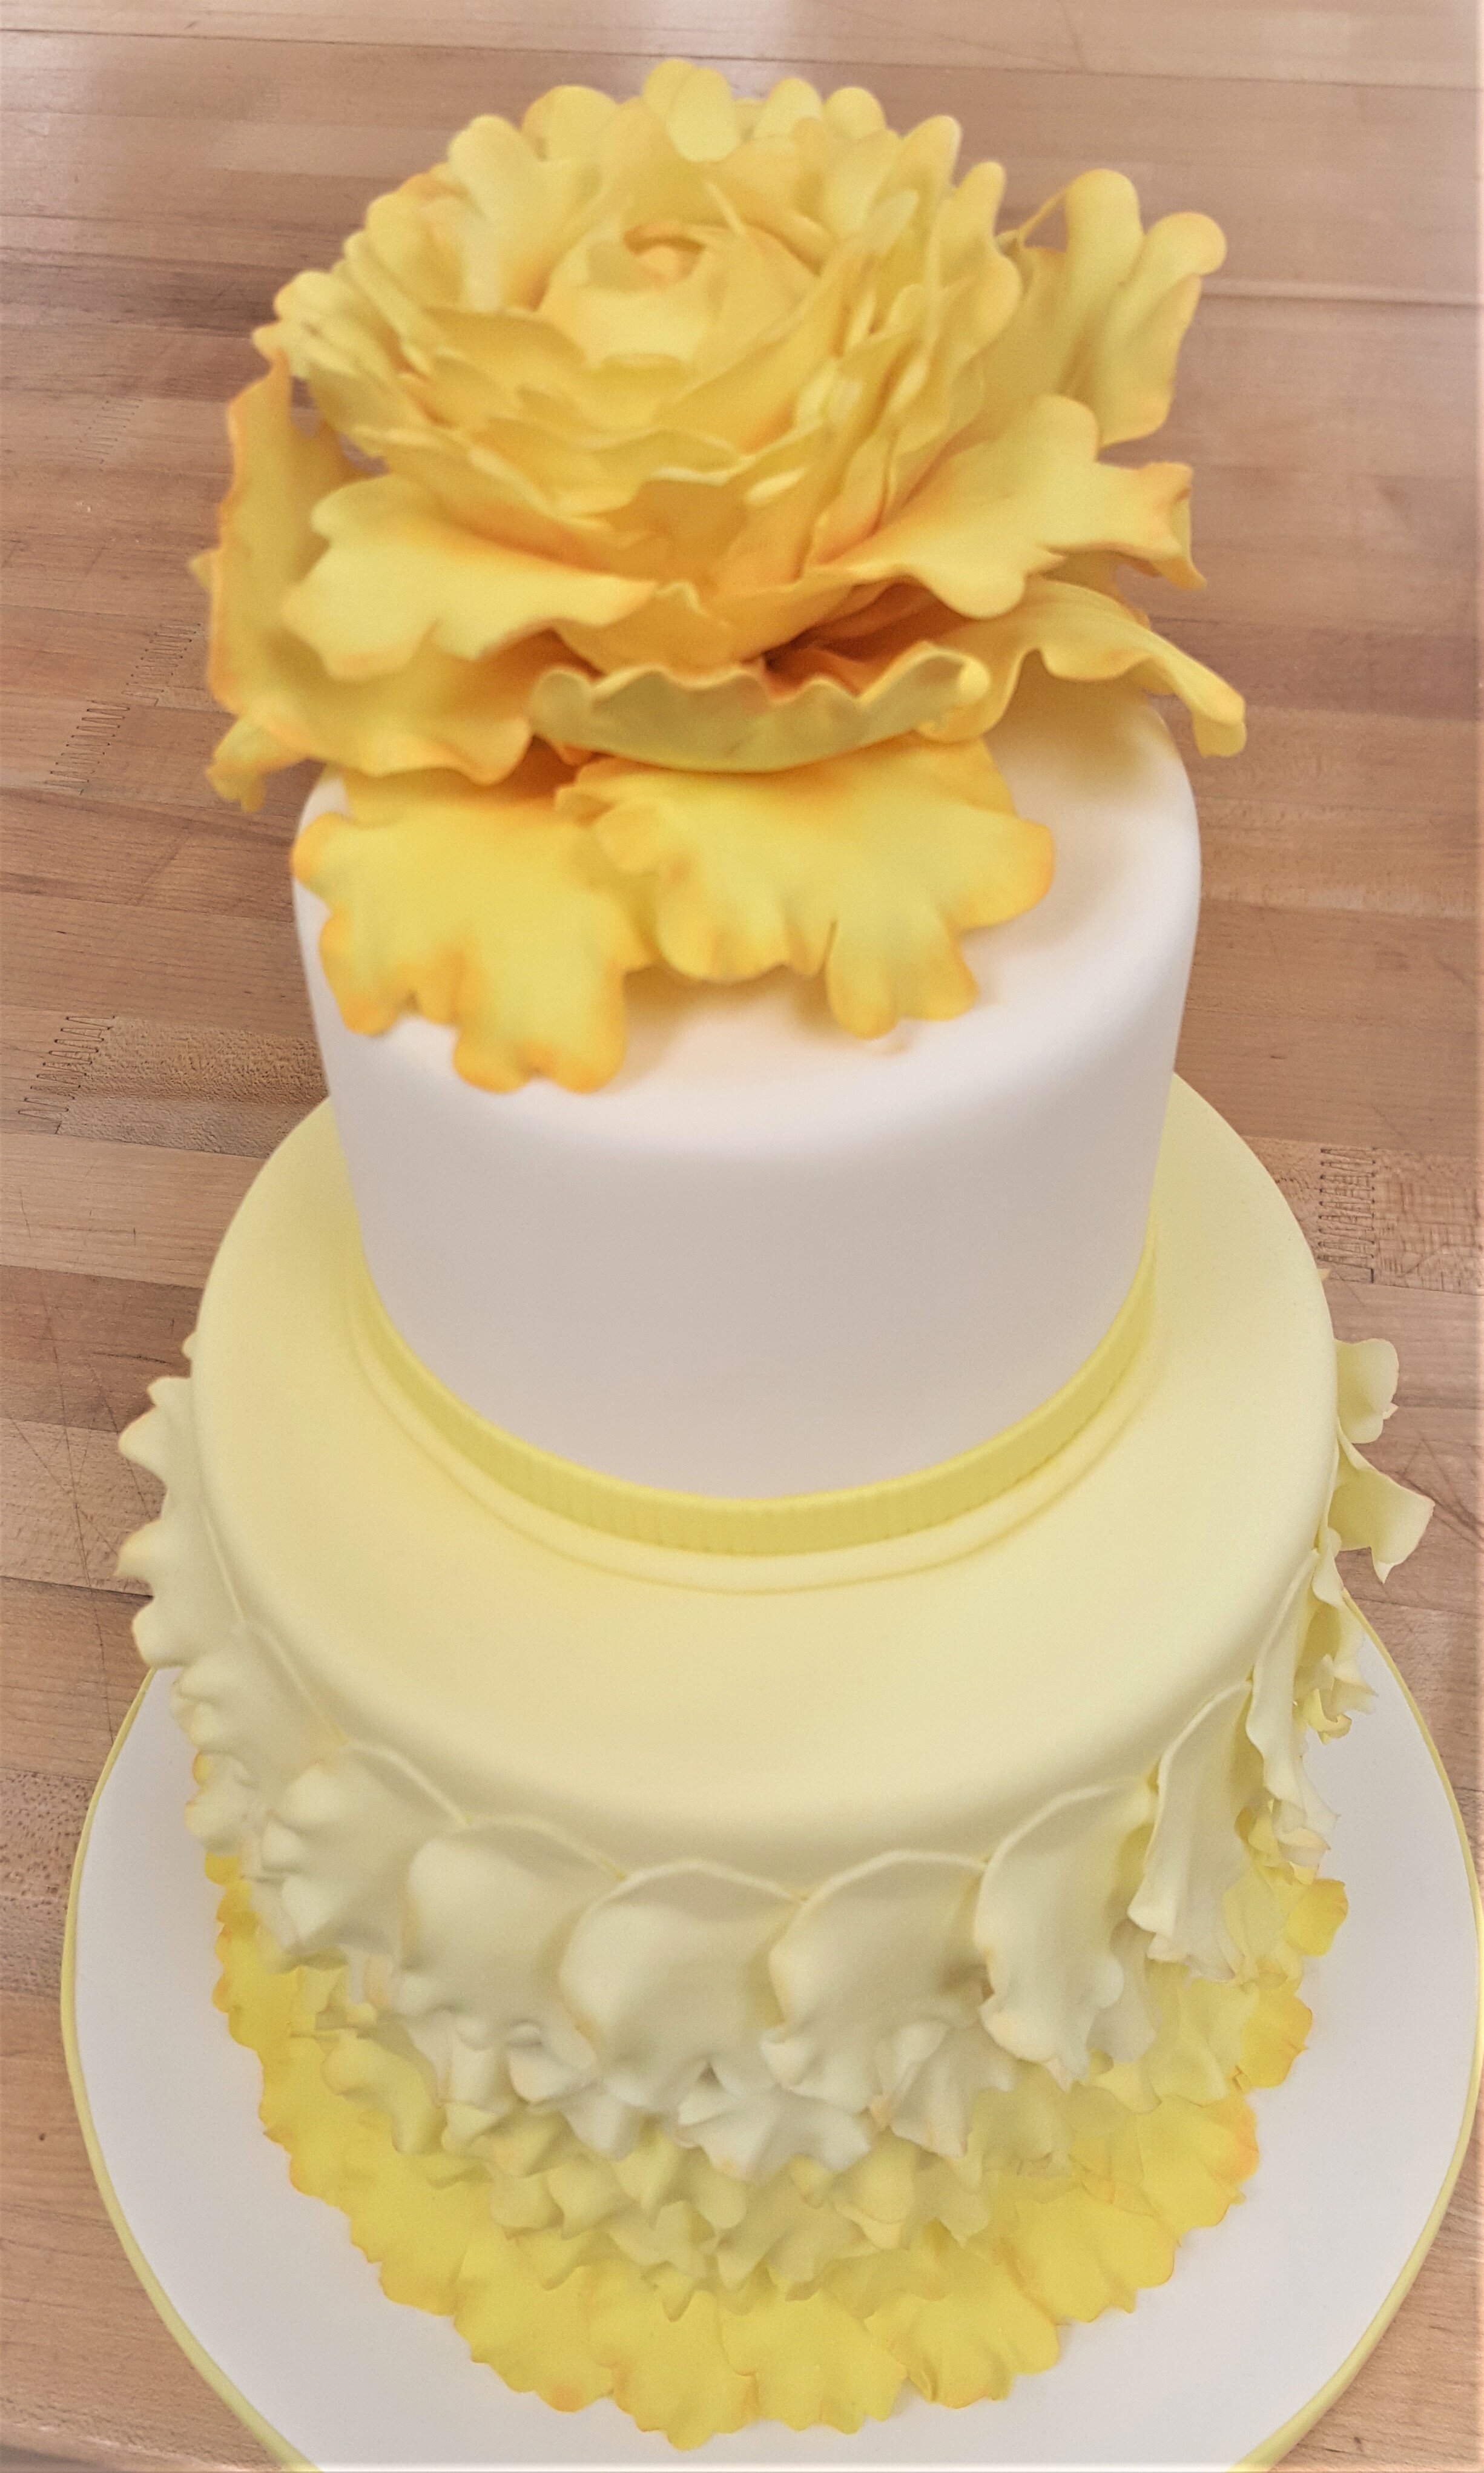 Chicago_Bakery-Yellow_Tiered_Cake.jpg